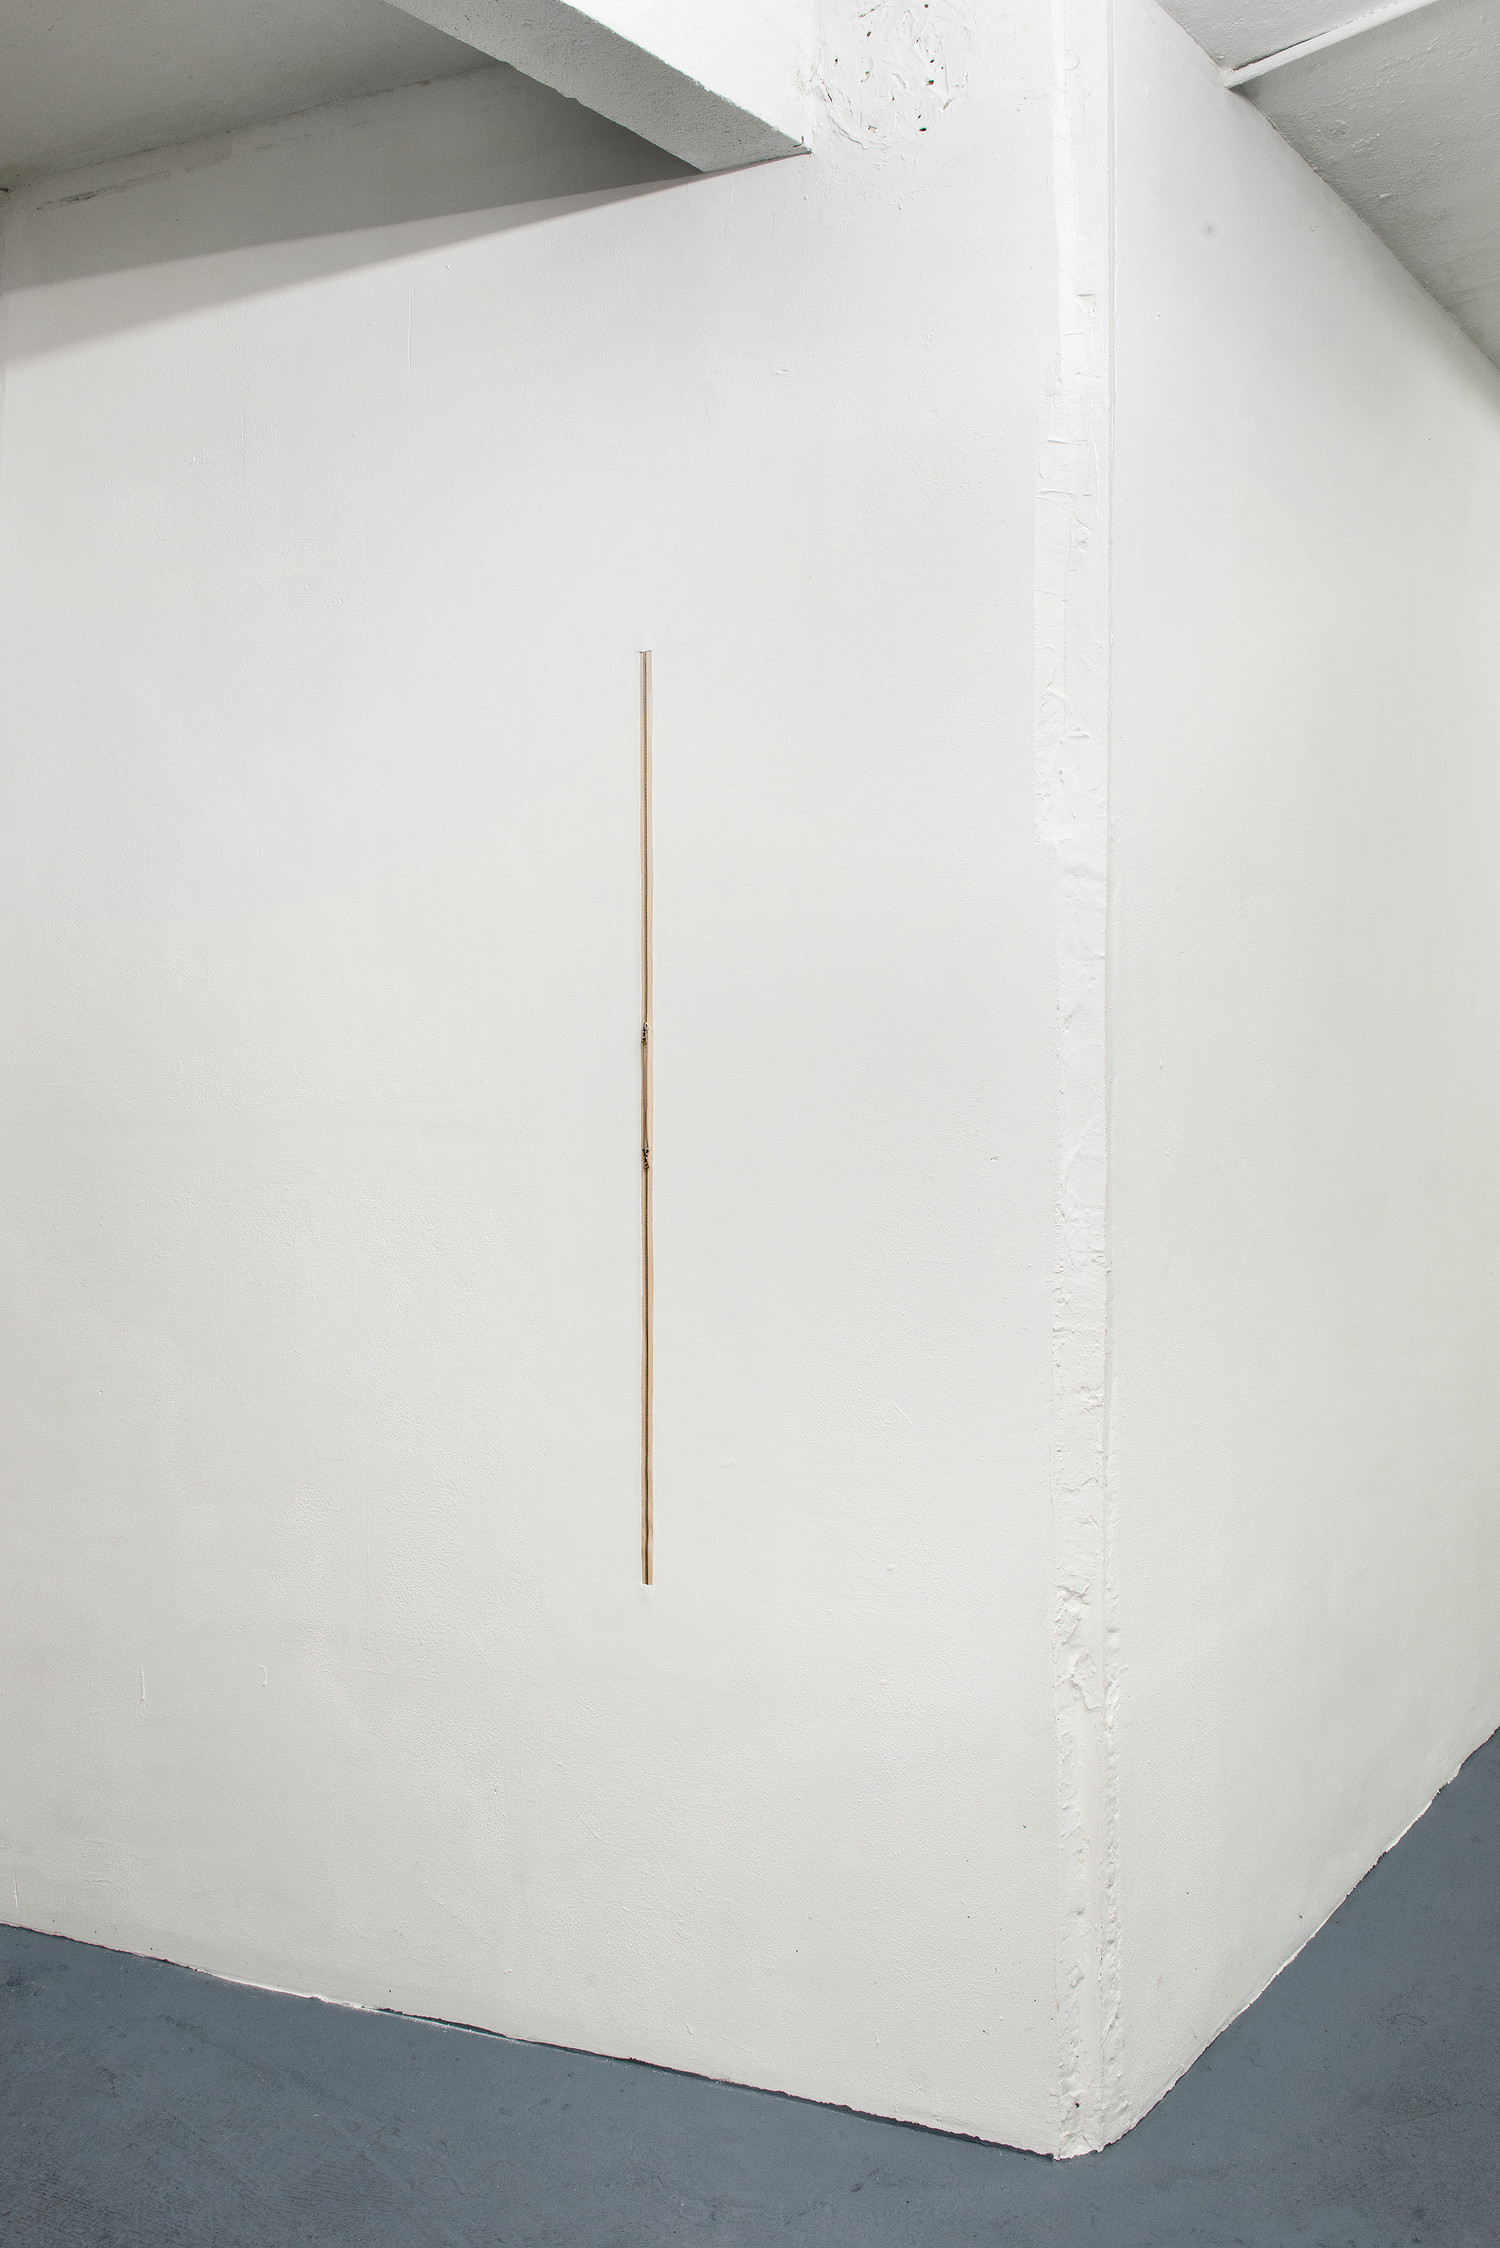 Zipper H116.5, 2020, zipper embedded into wall, 116,5 x 1,5 cm — © Manon Wertenbroek